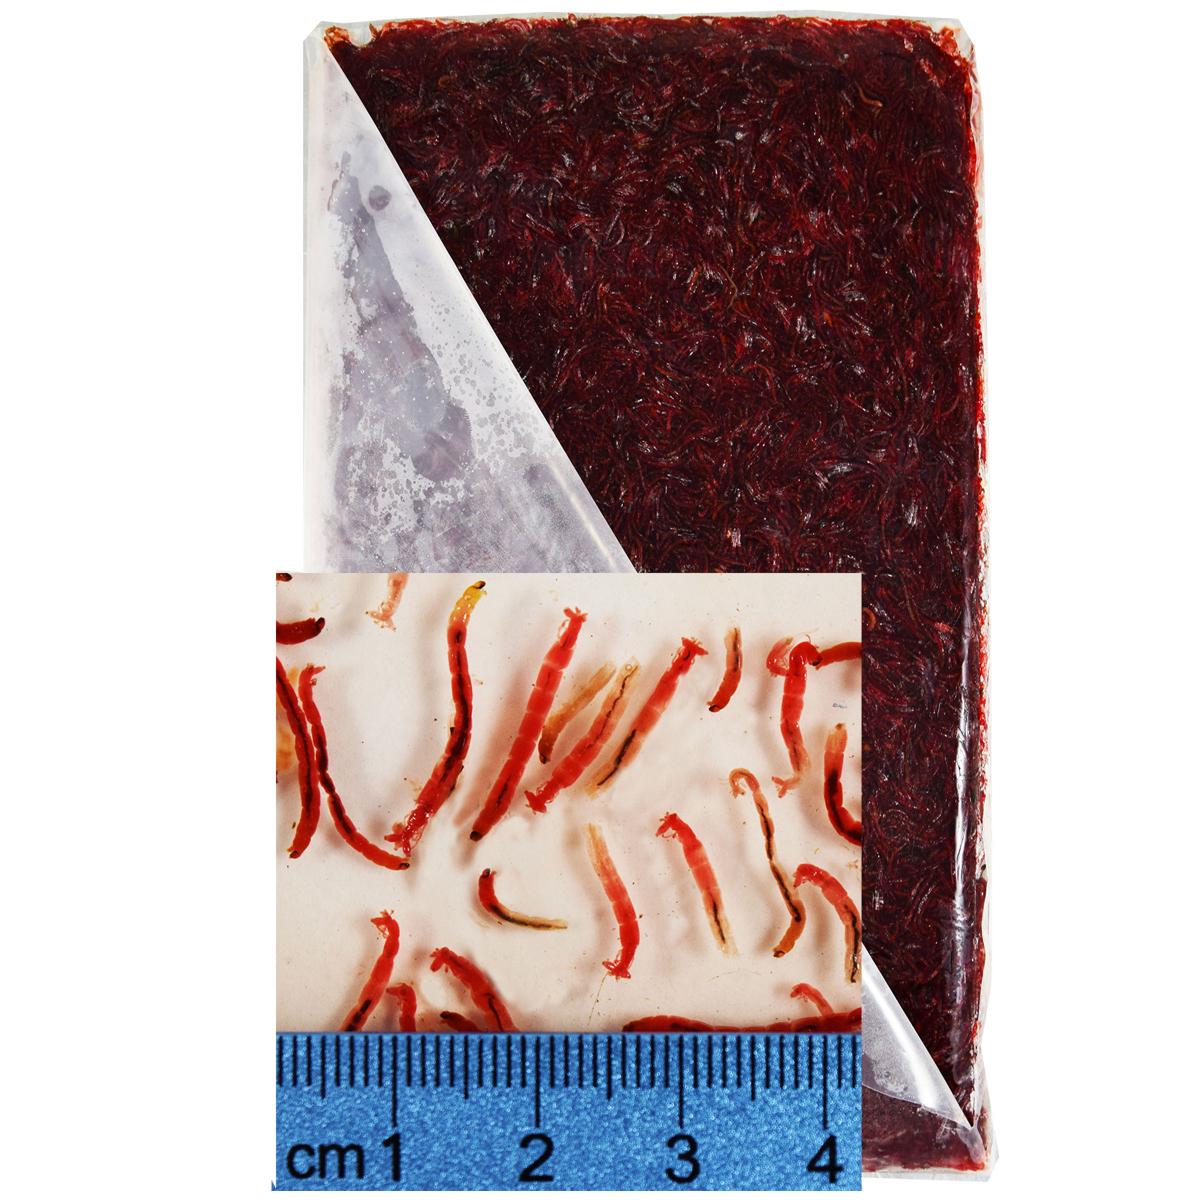 Frozen Bloodworm Flat Packs, 10 x 500 gm. (1.1 lb.) flat packs